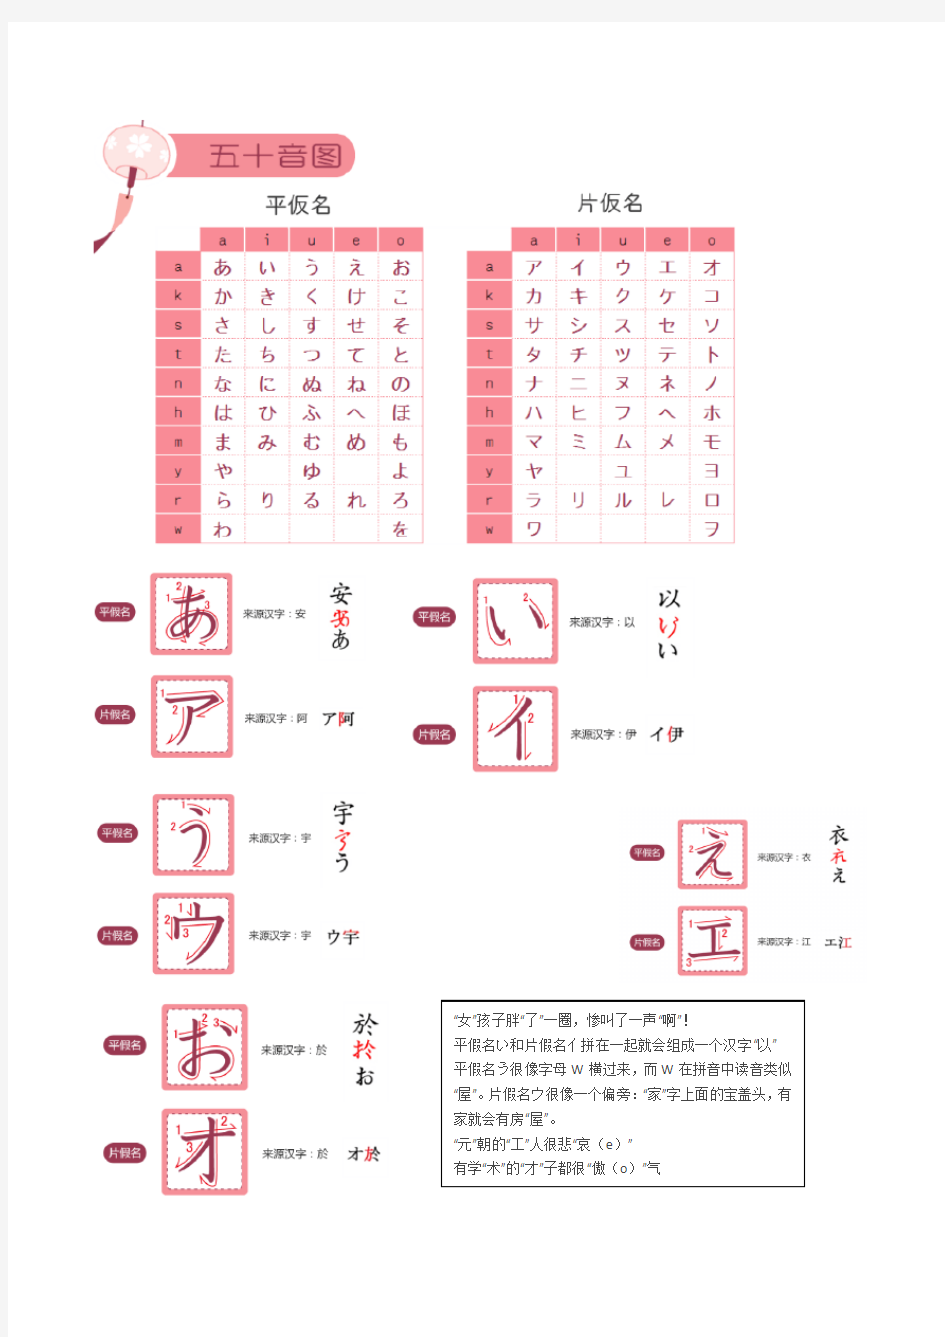 日语学习五十音图记忆和书写方法